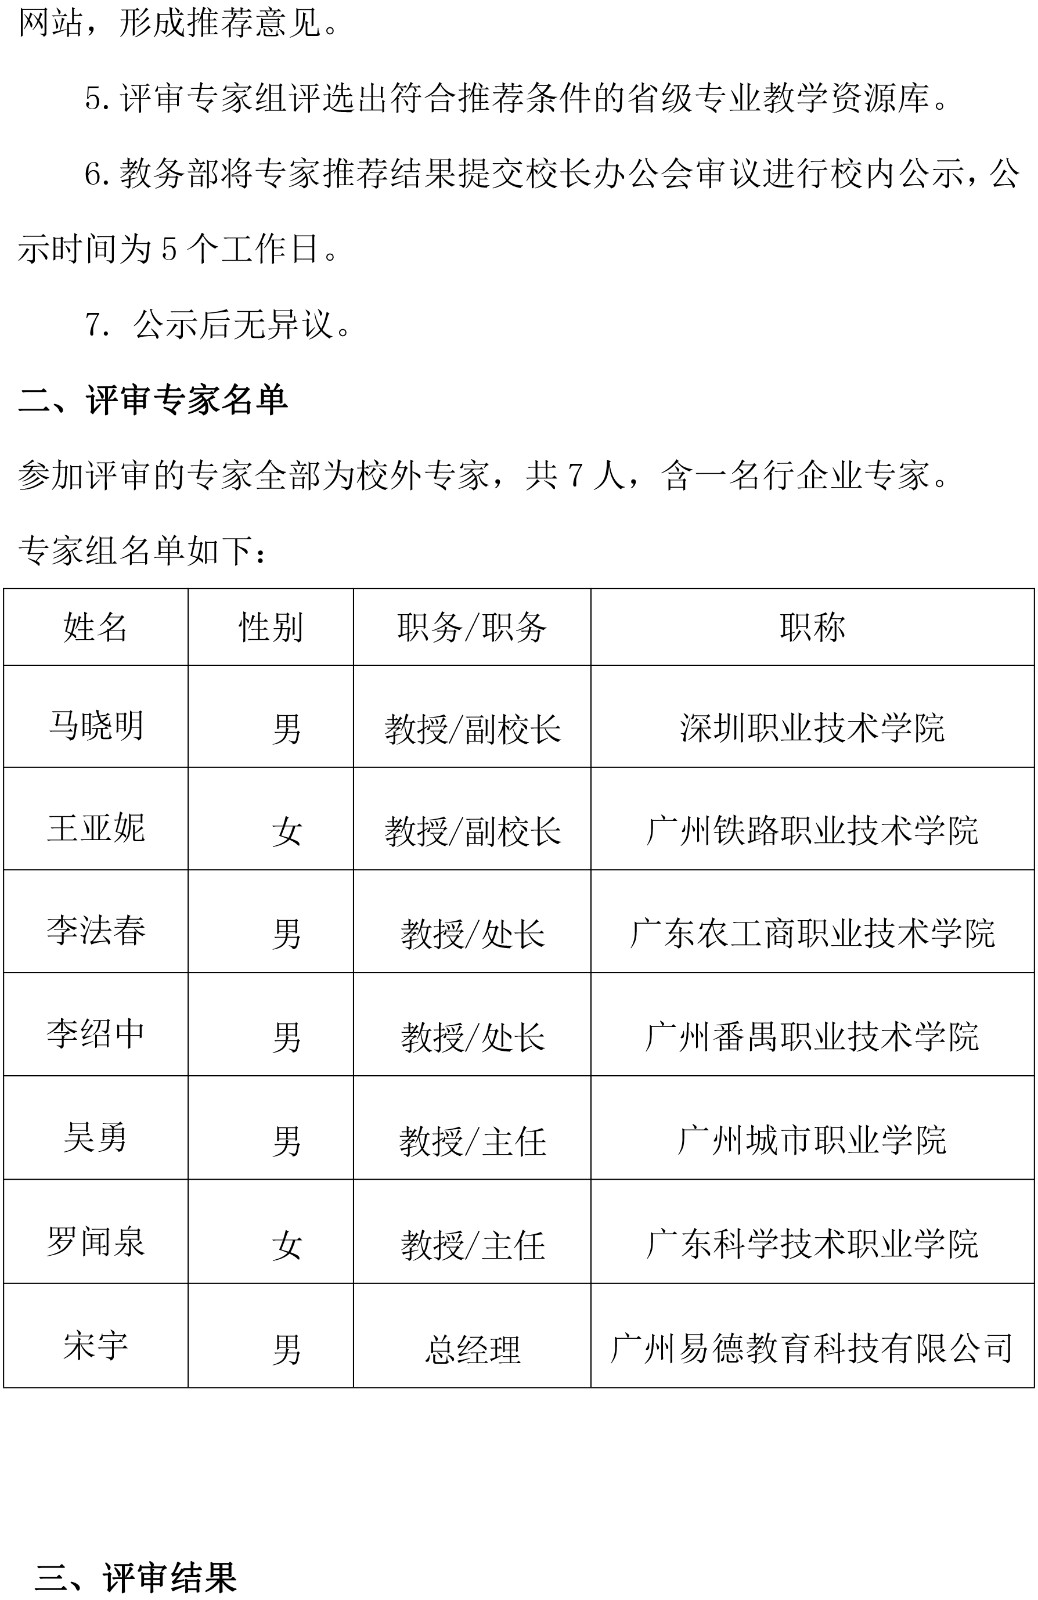 附件1：2021年广东轻工职业技术学院遴选推荐省高职教育专业教学资源库的总结报告-2.jpg